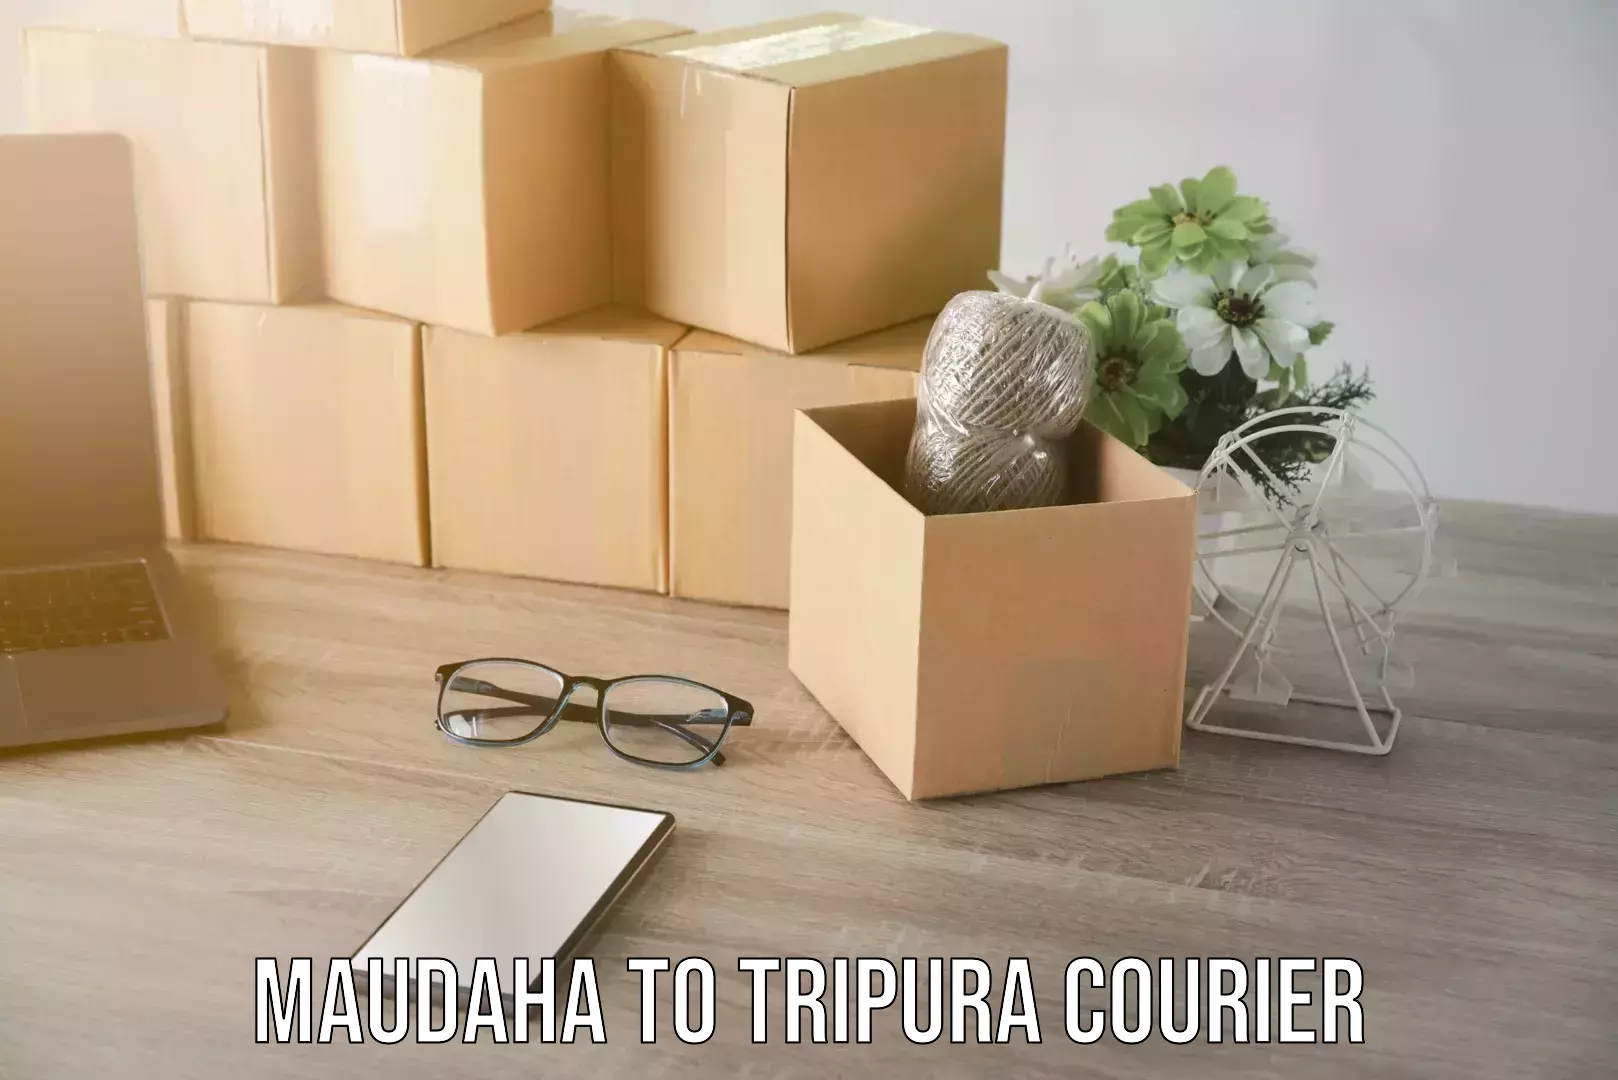 Furniture transport service in Maudaha to Tripura